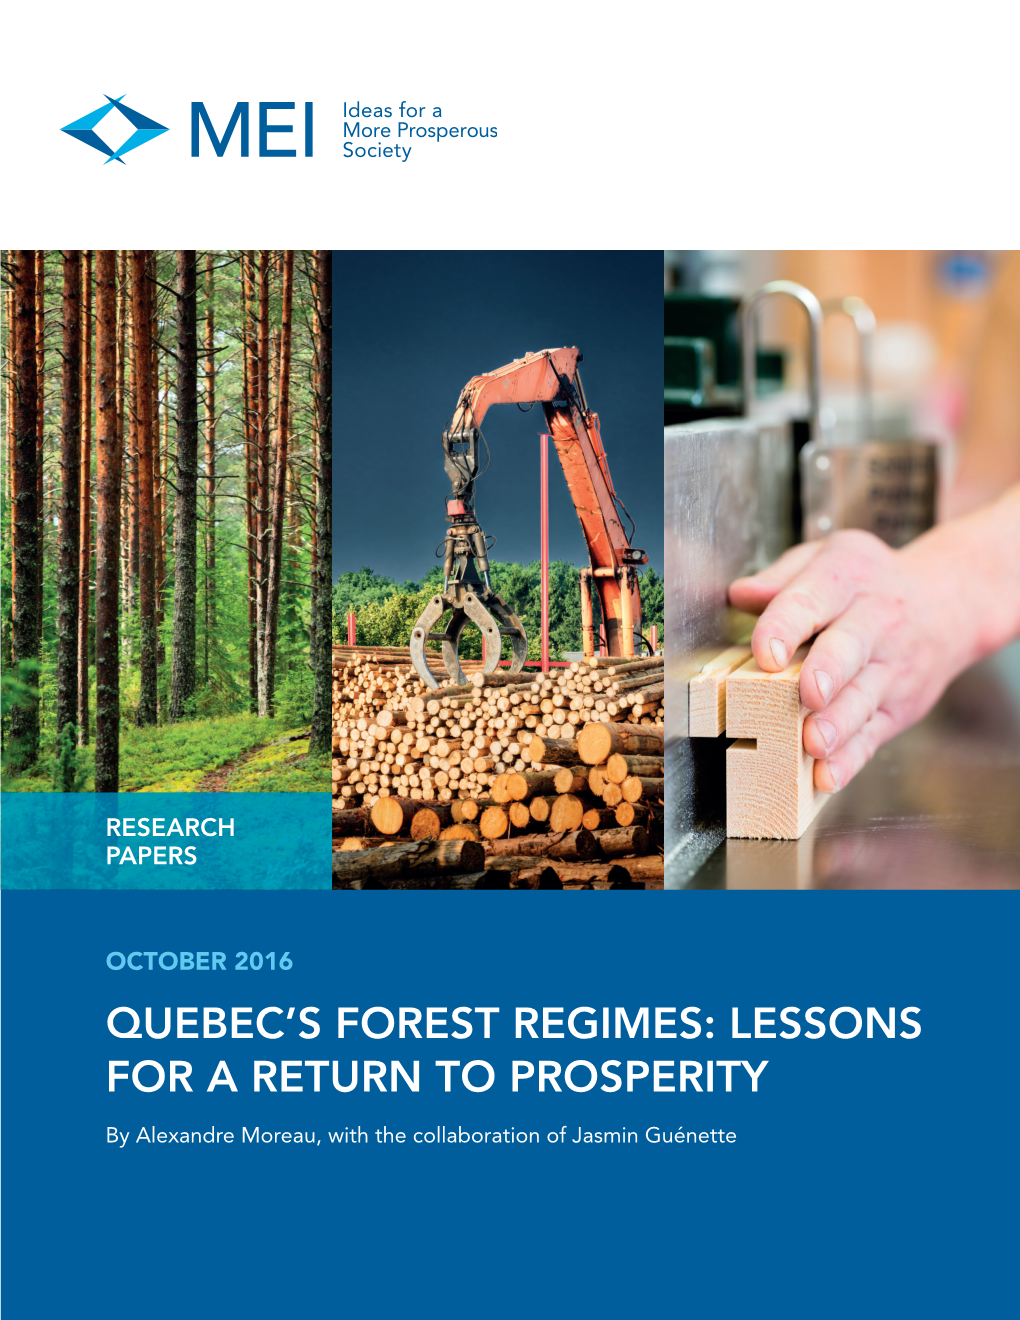 Quebec's Forest Regimes